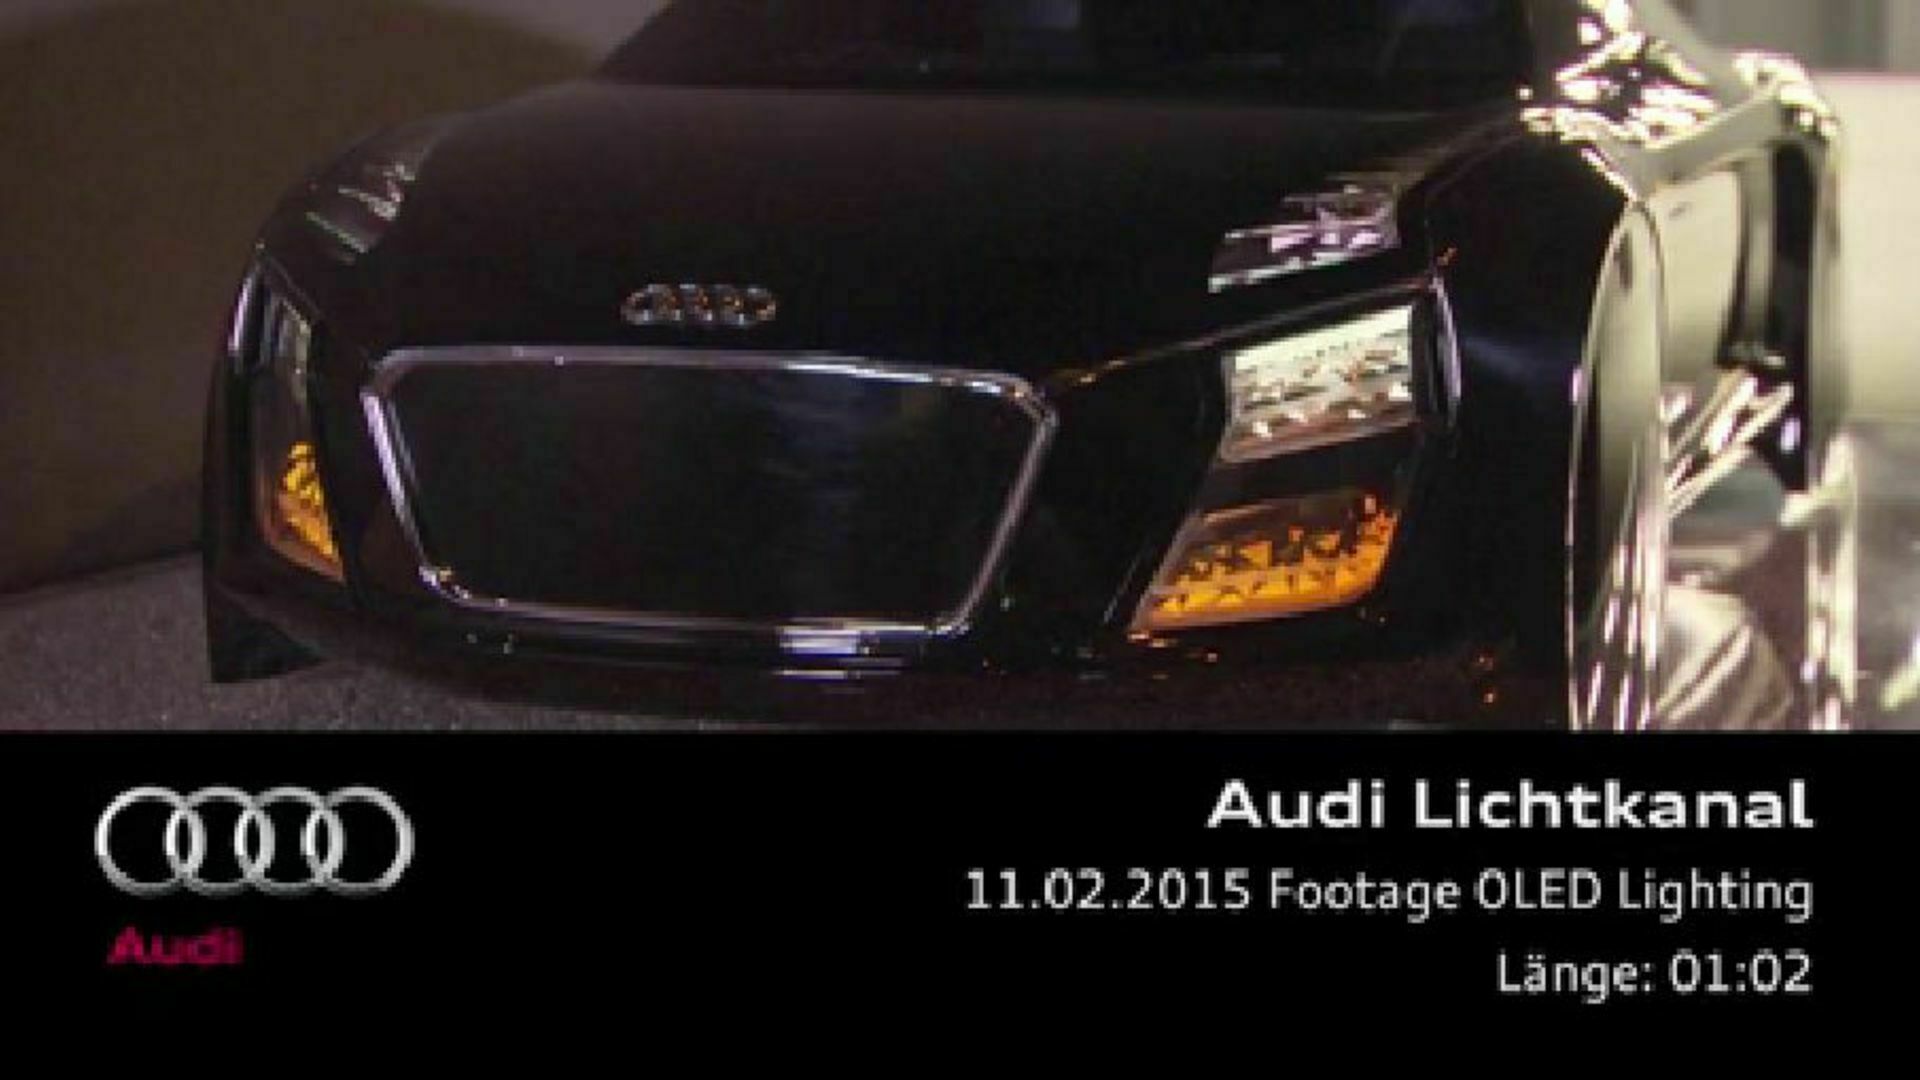 Audi future lab - Footage OLED Lighting